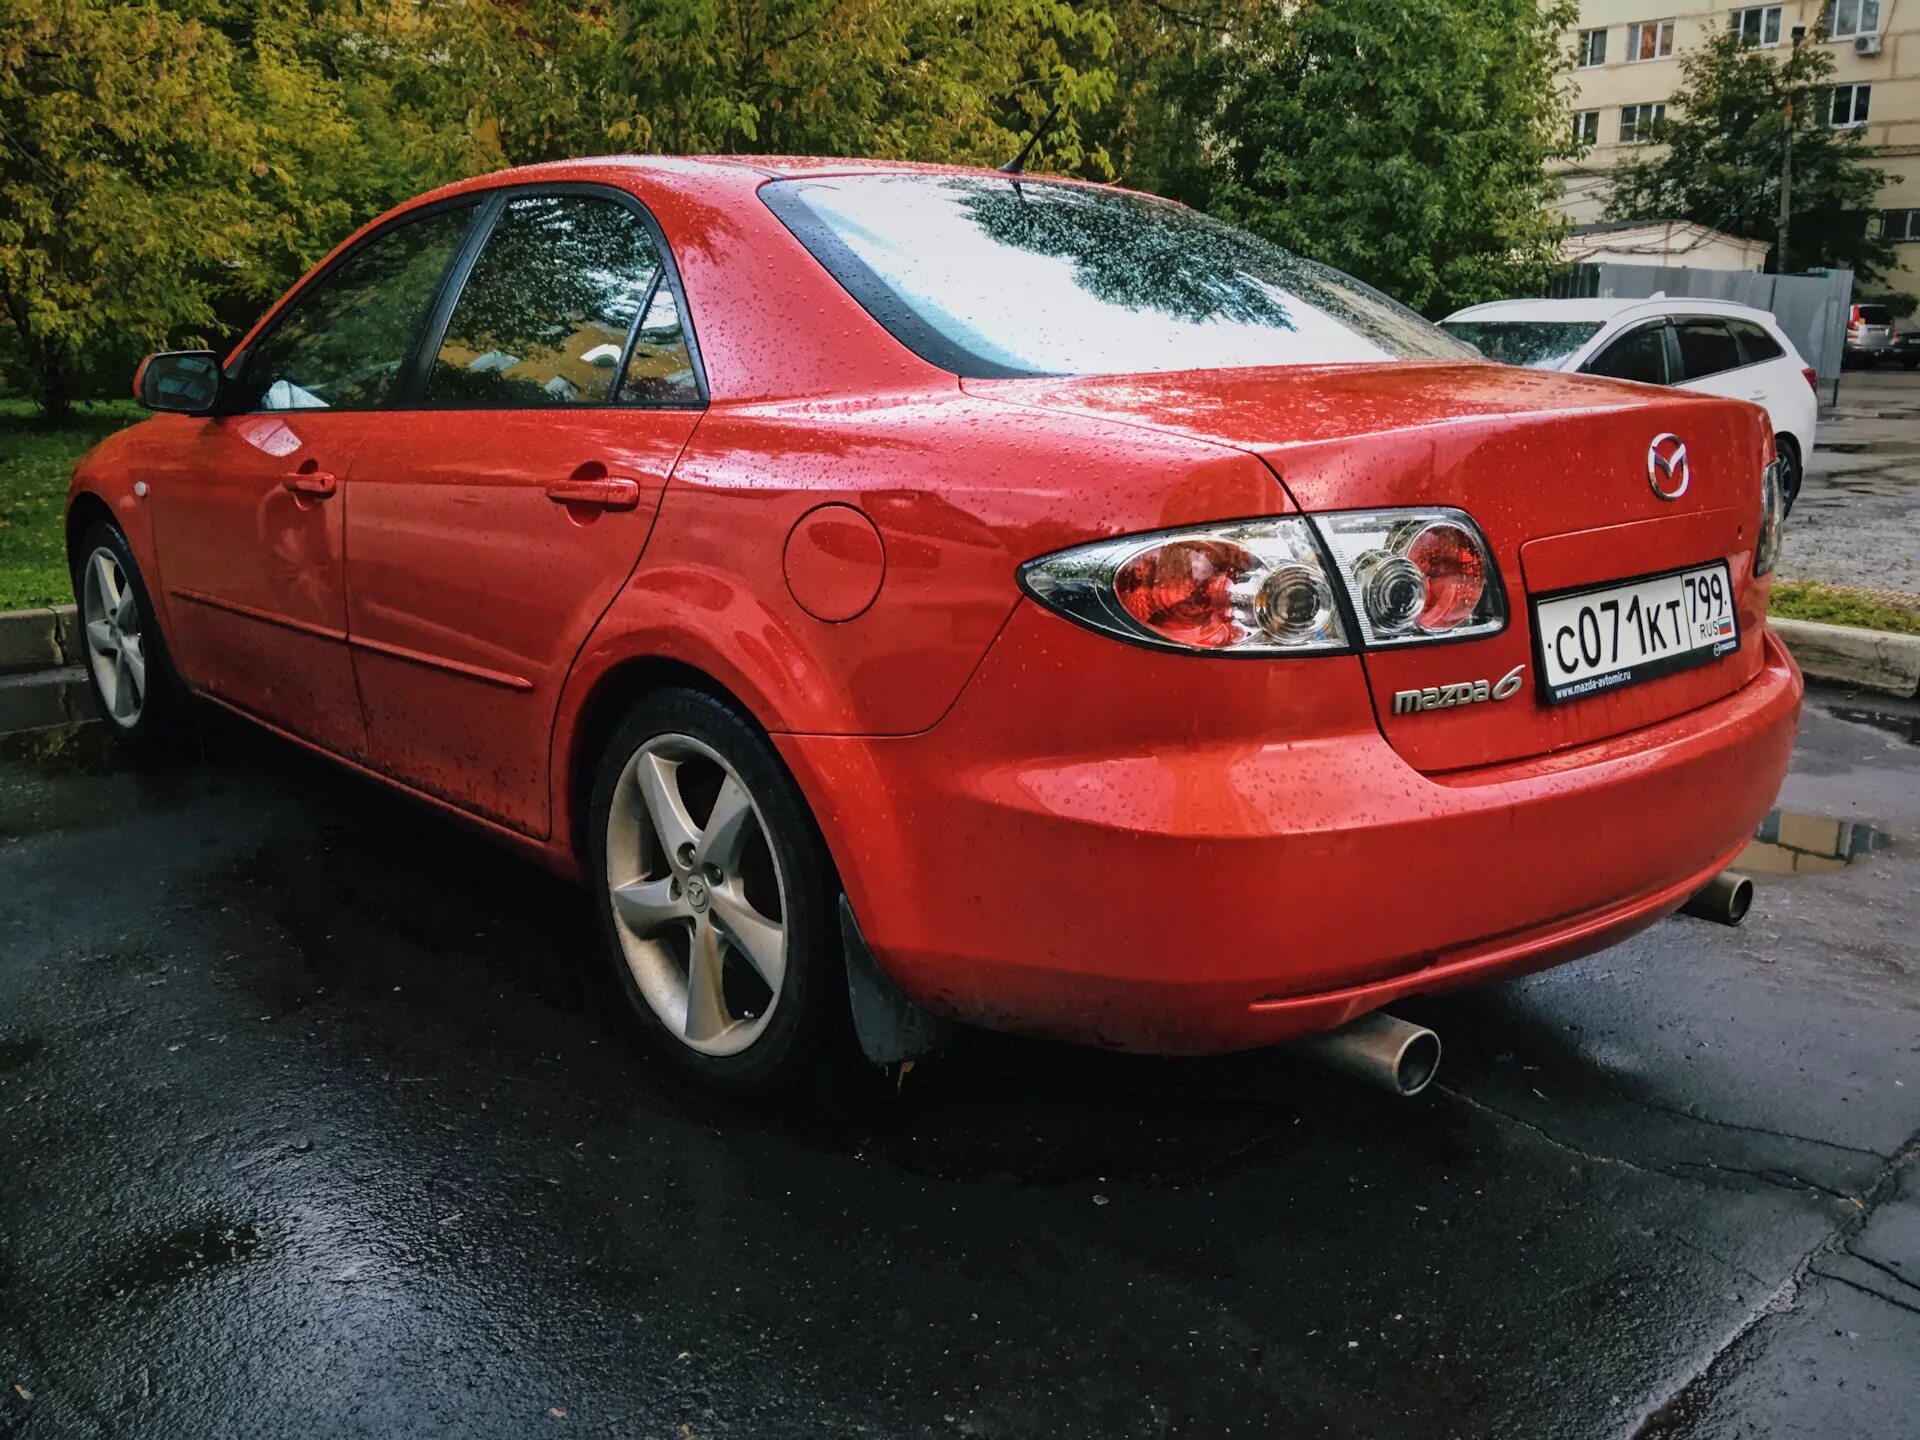 Mazda 6 2006. Мазда 6 gg 2006. Мазда 6 2006 красная. Мазда 6 2006 2.0.